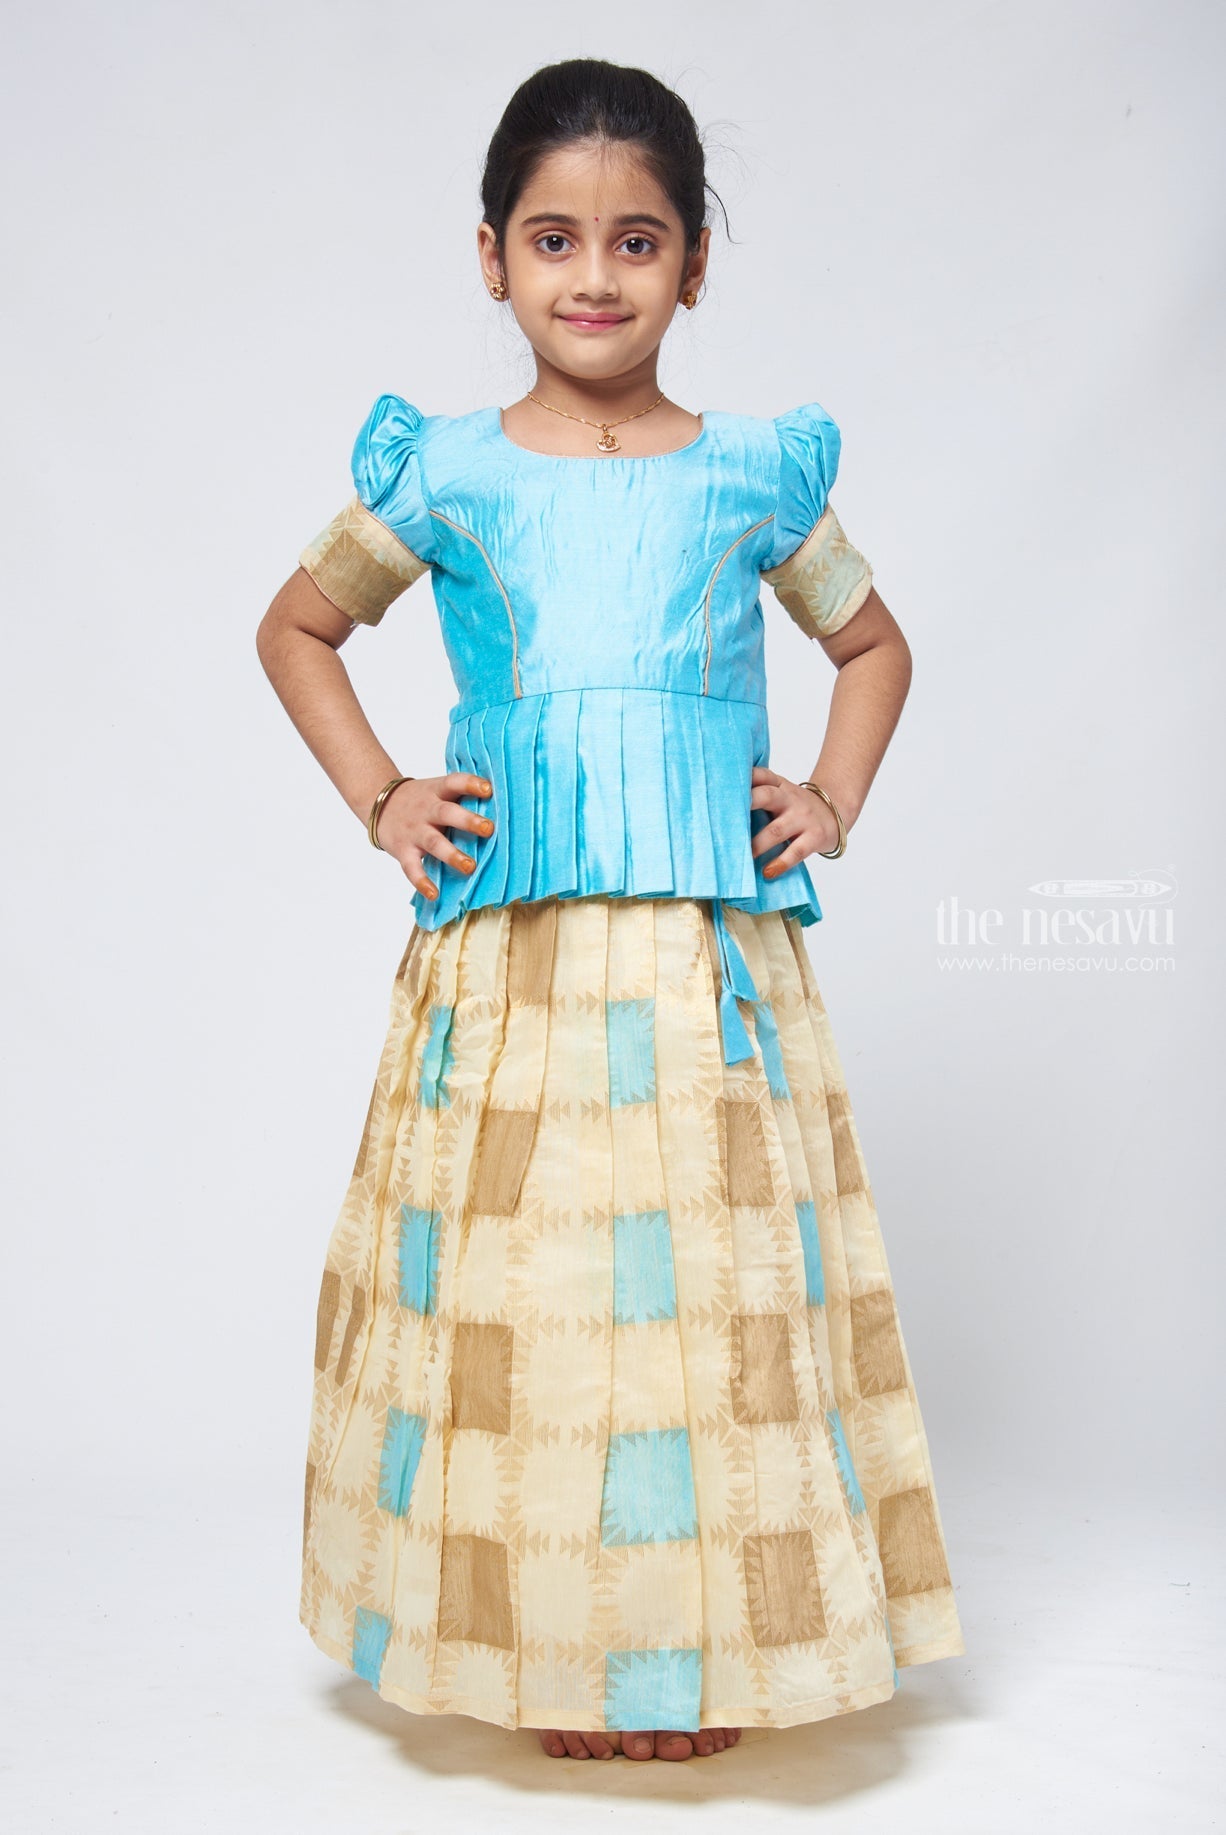 Buy Wommaniya Impex New south Indian traditional Langa voni pattu pavadai  Jecquard Lehenga choli for girls dress (12-18 Months, Orange) at Amazon.in